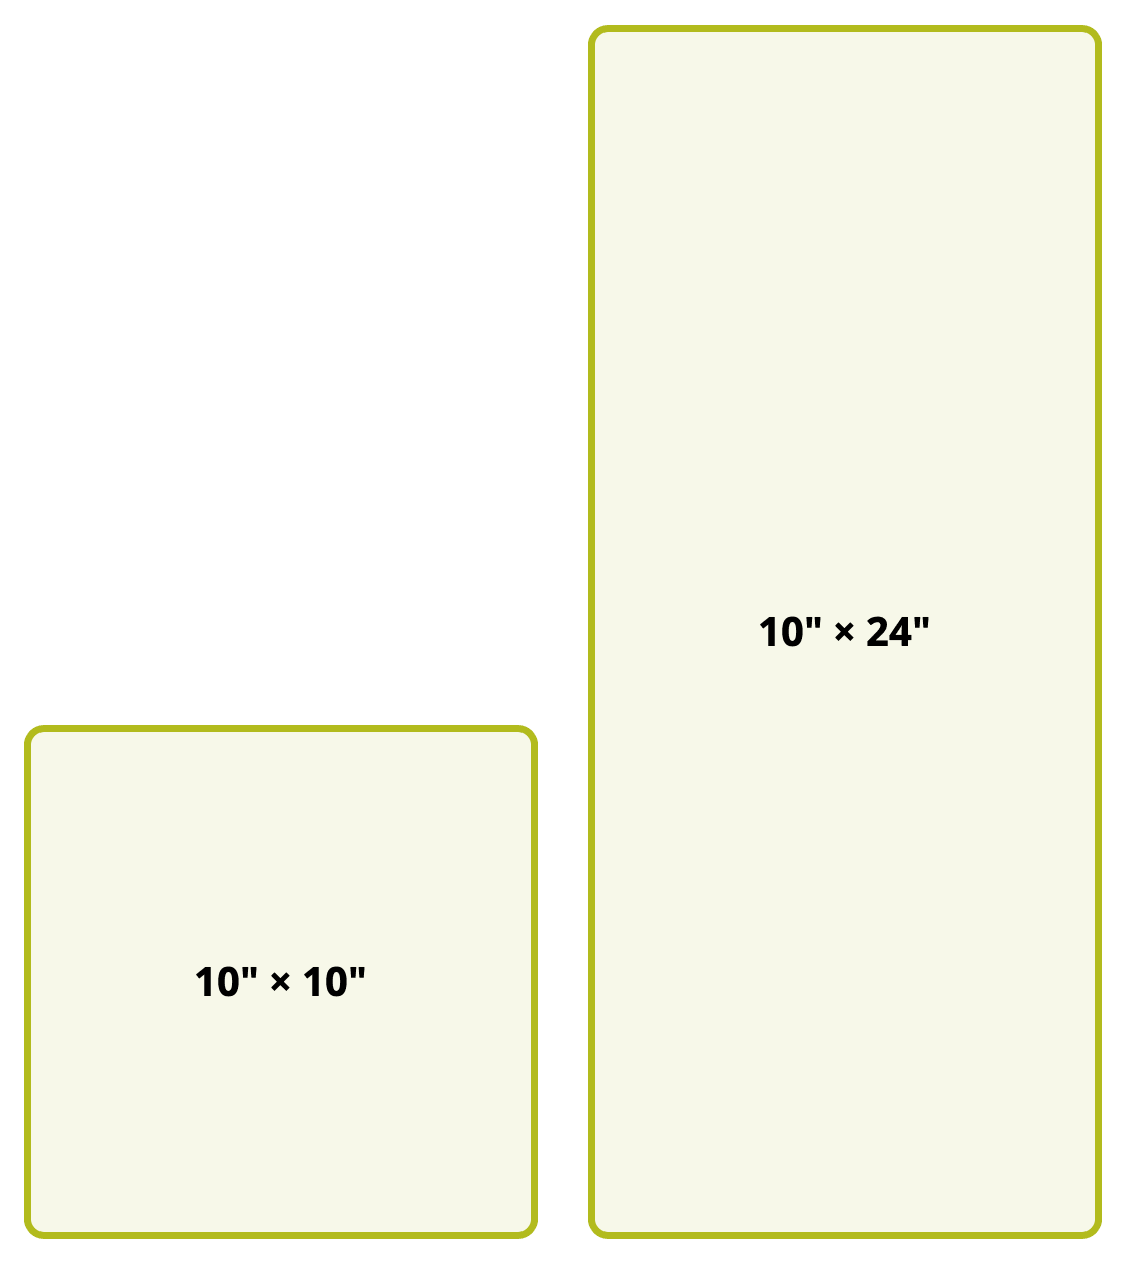 die sizes: 10" × 10", 10" × 24"